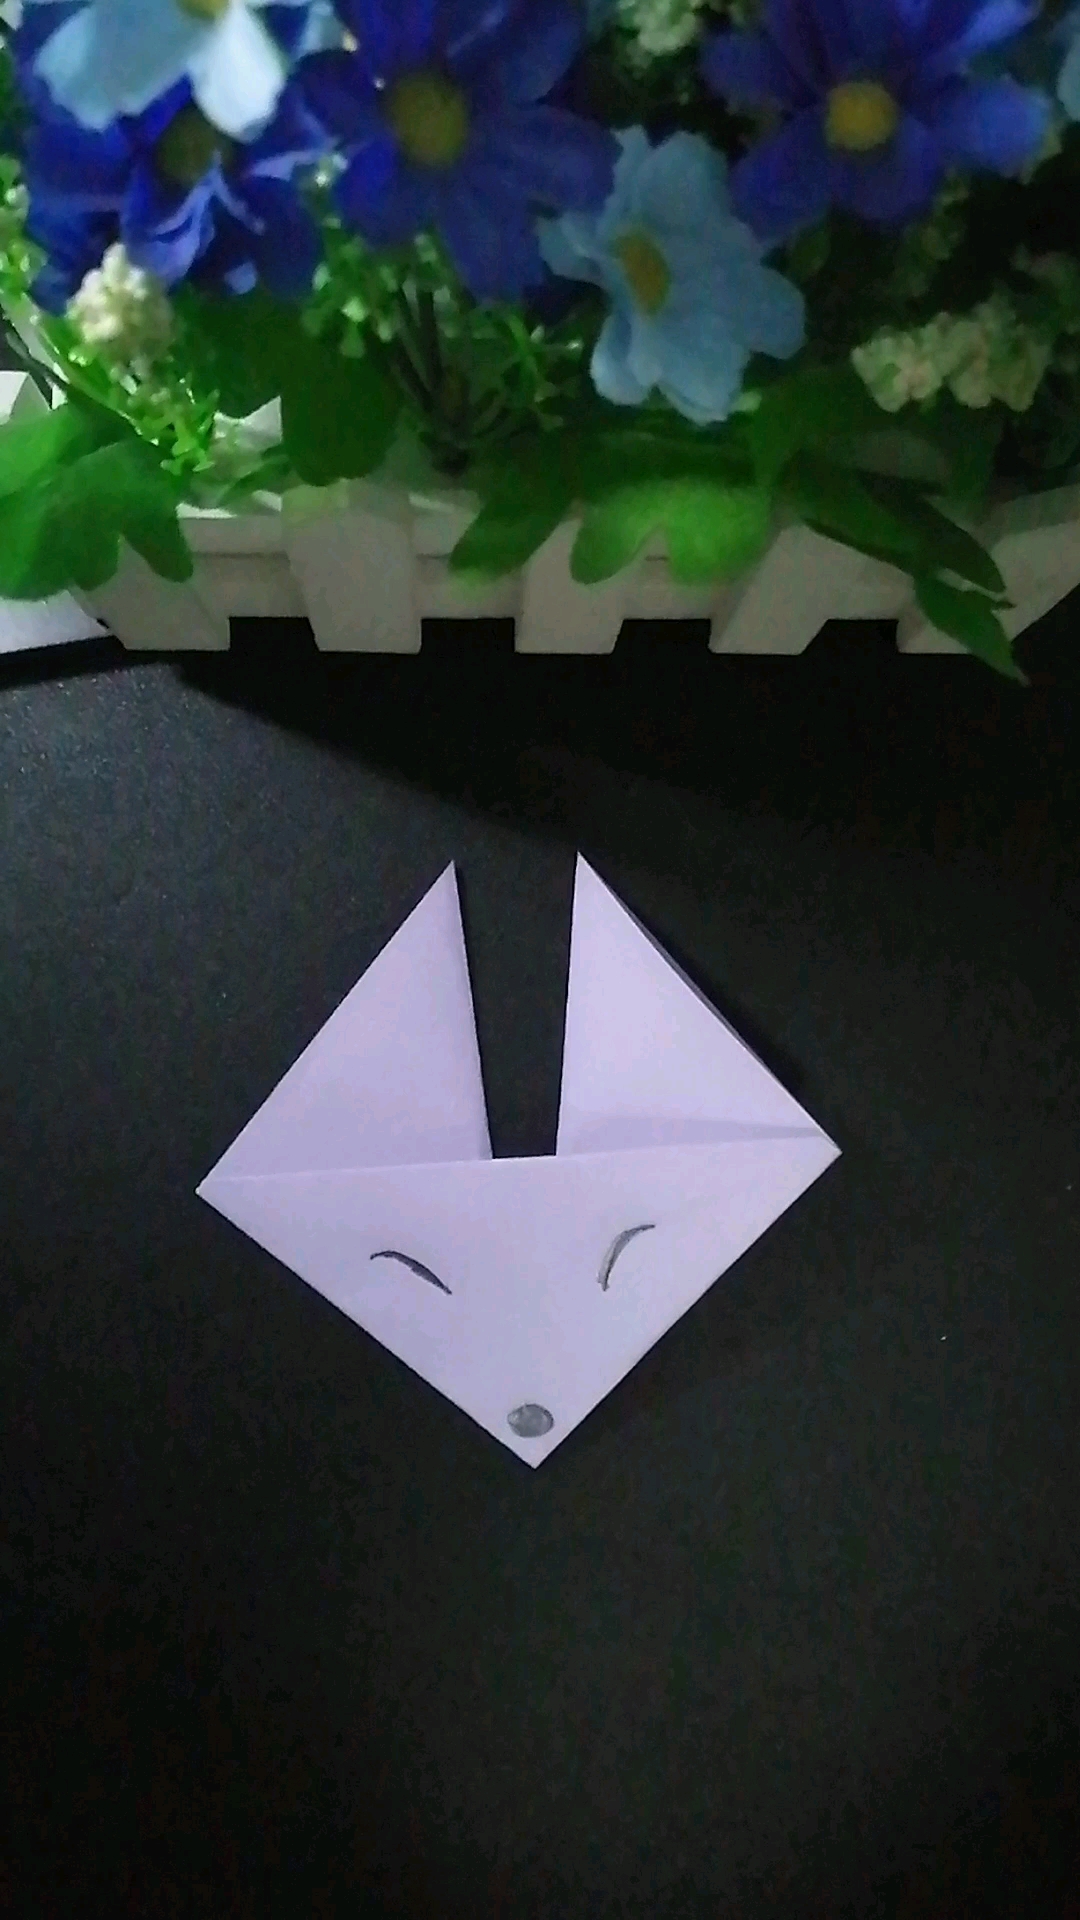 折纸小狐狸简单折法图片